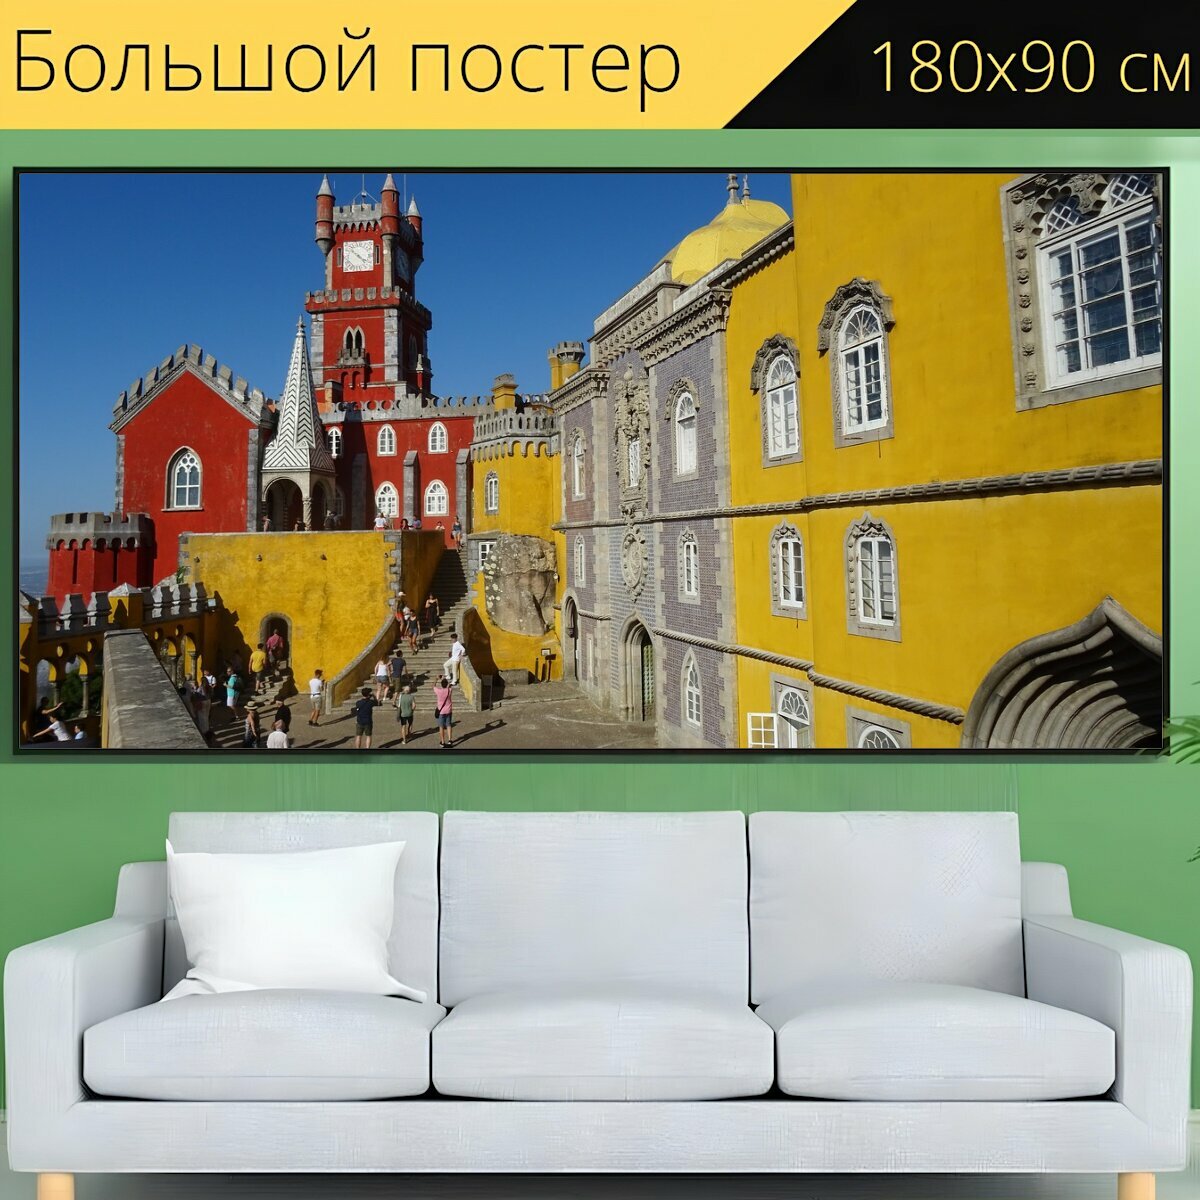 Большой постер "Замок, дворец, сказка" 180 x 90 см. для интерьера